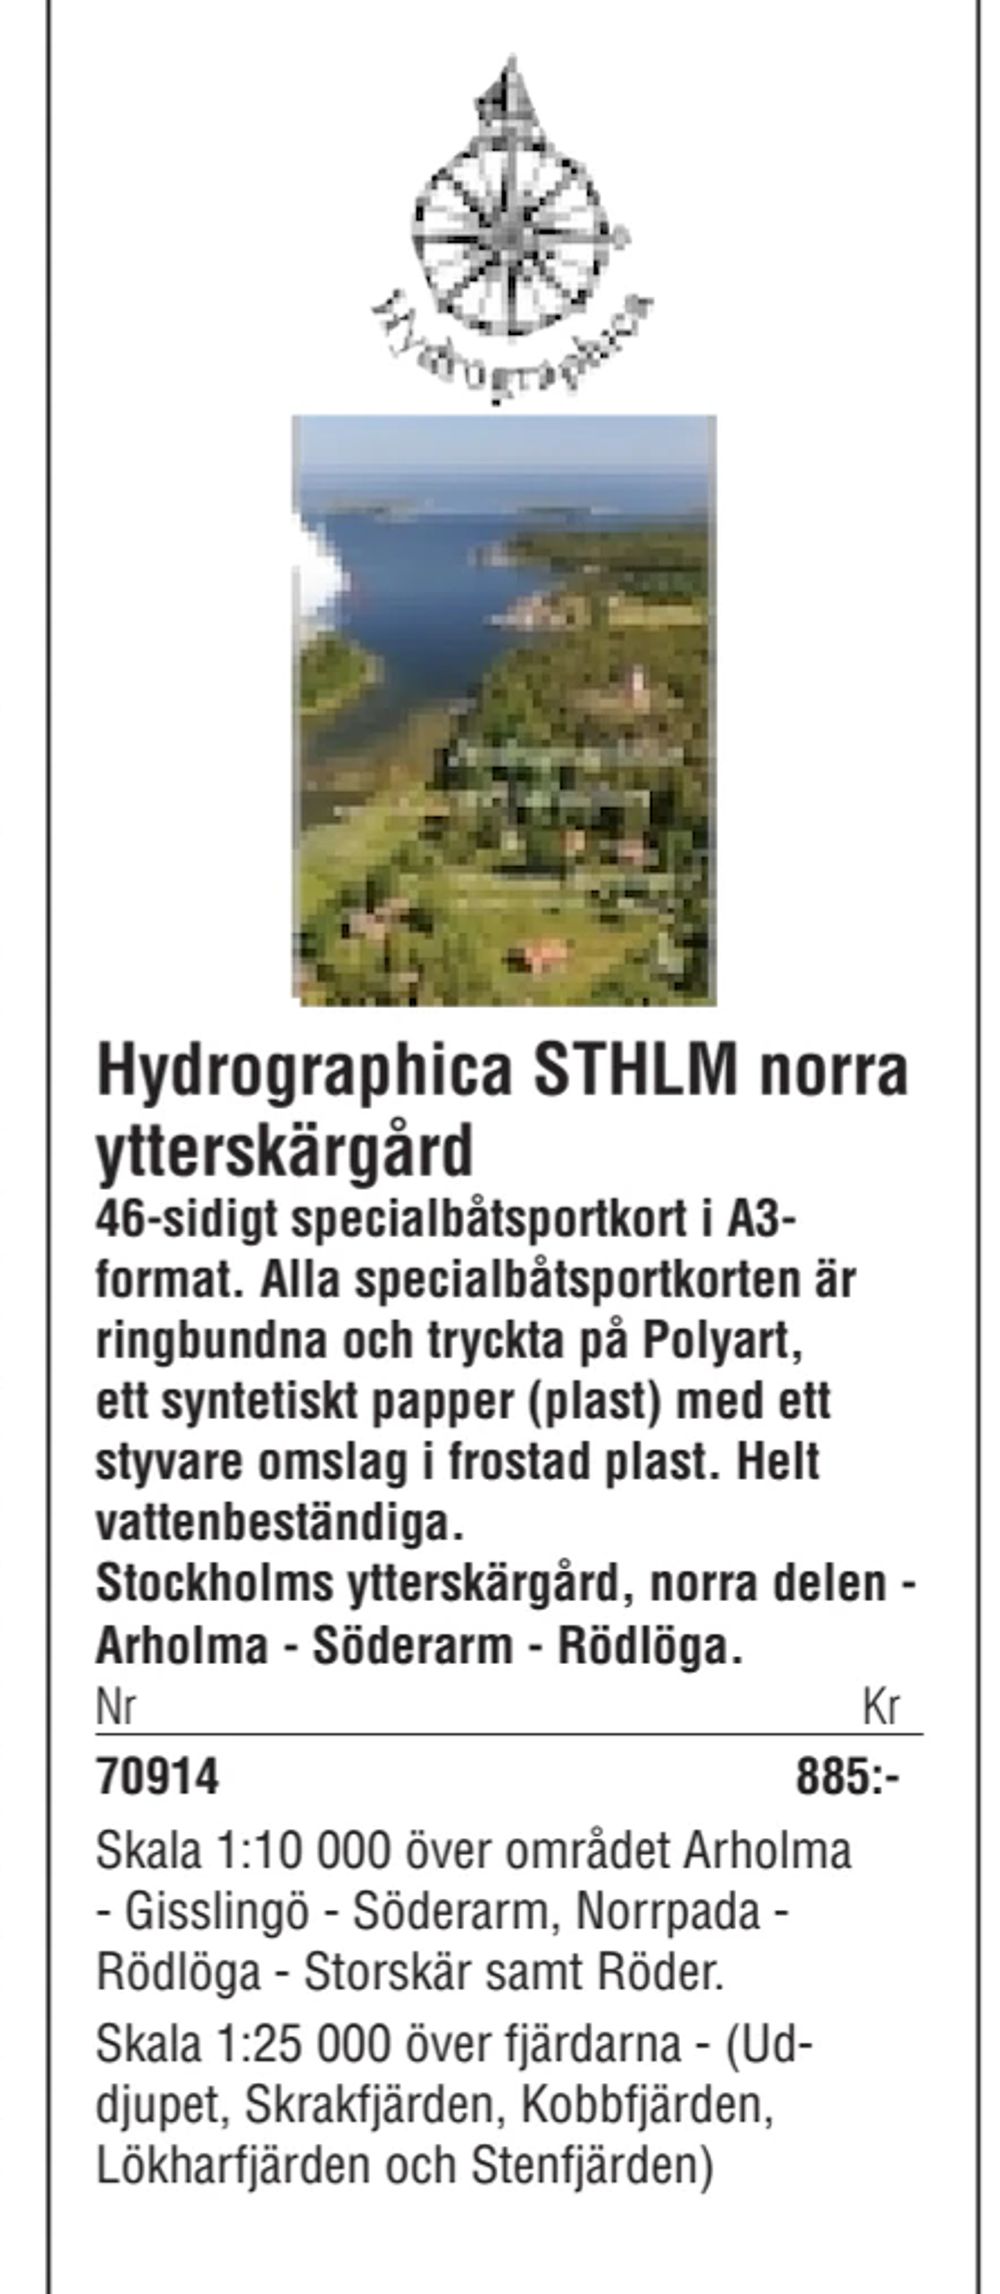 Erbjudanden på Hydrographica STHLM norra ytterskärgård från Erlandsons Brygga för 885 kr